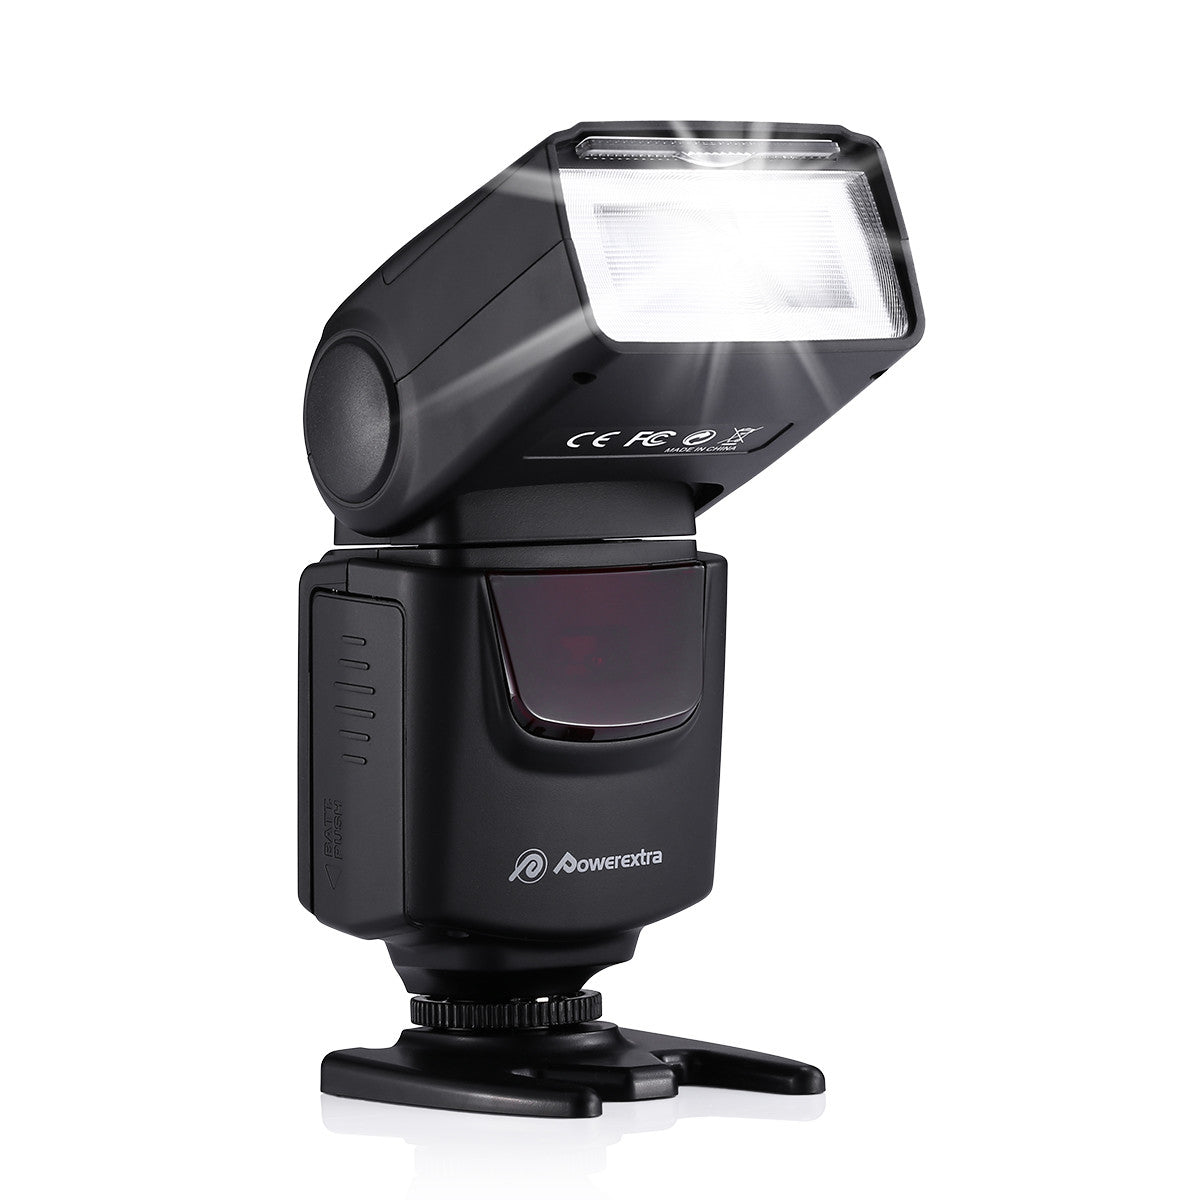 Powerextra Professional DF-400 Speedlite Camera Flash for DSLR Cameras